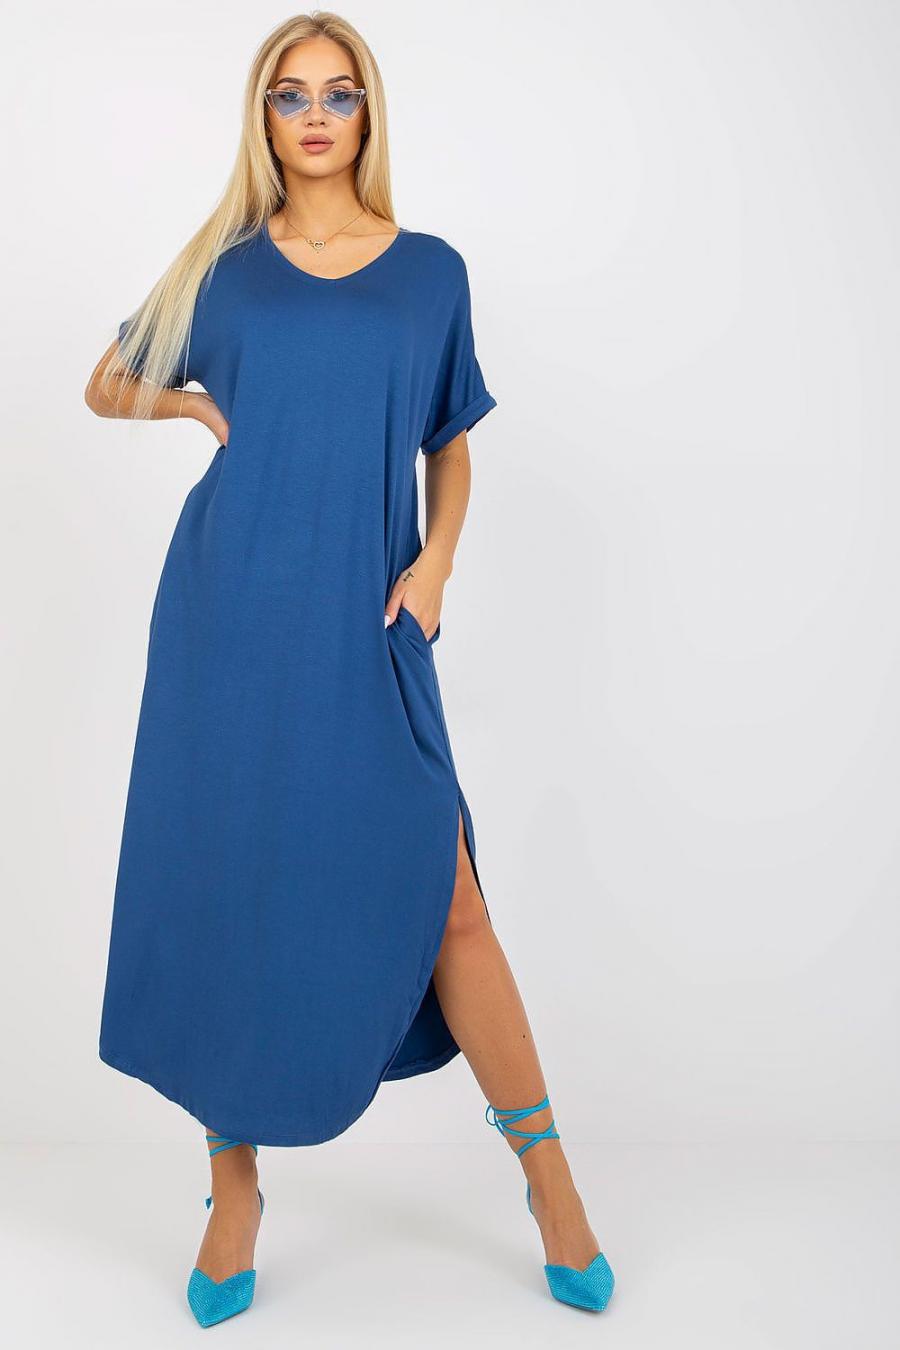 Ostatní značky šaty dámské 167099 - Tmavě modrá - velikost S